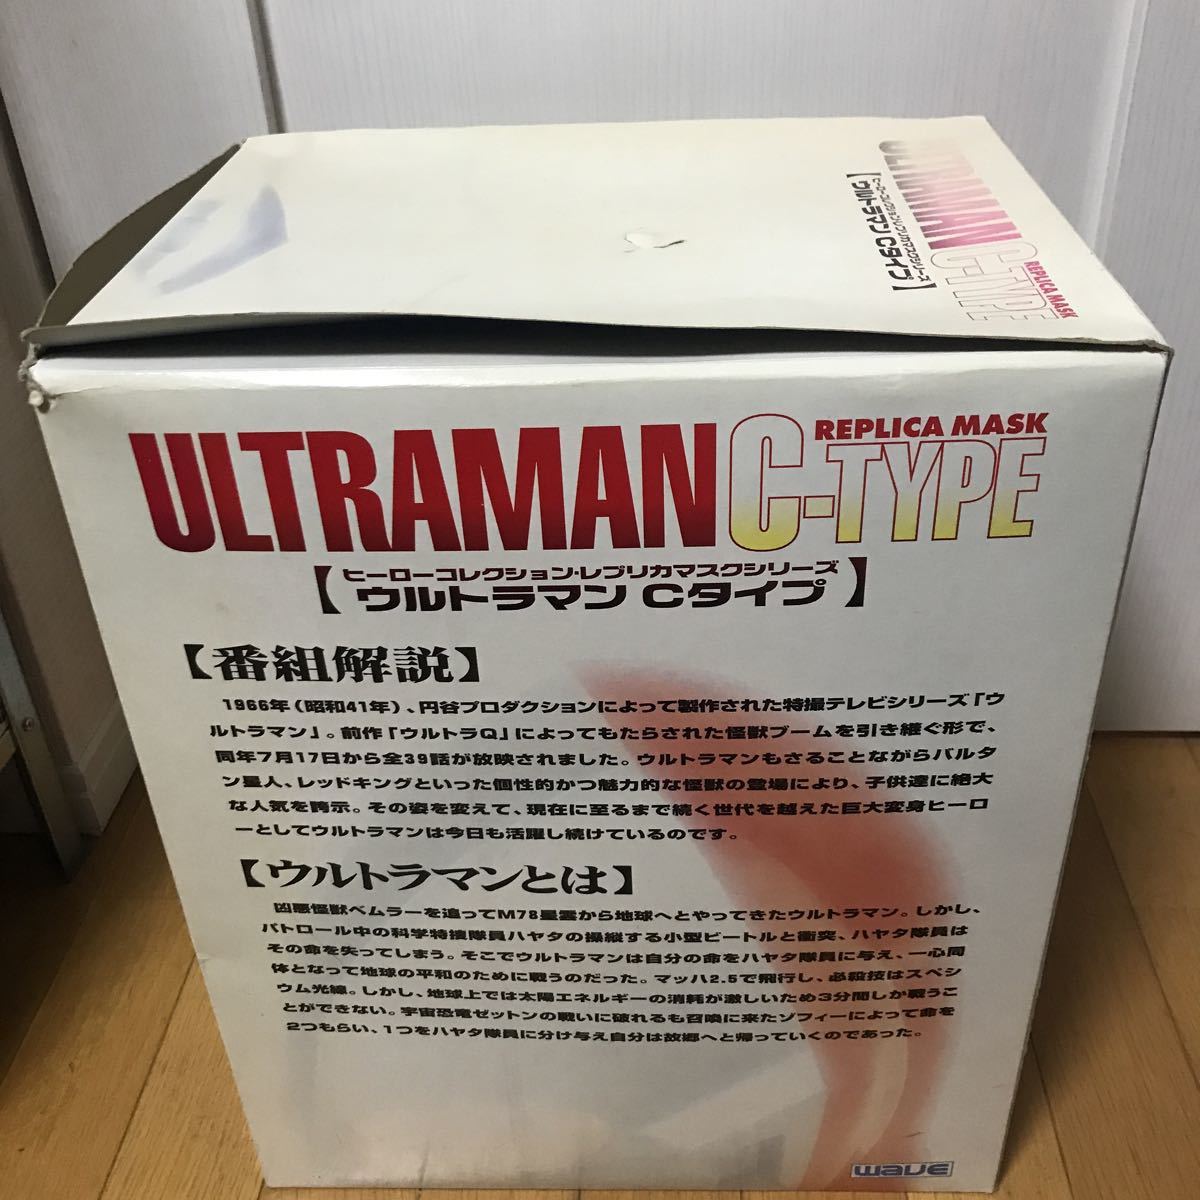 iicoo [ ценный . с ящиком ]WAVE герой коллекция копия маска серии в натуральную величину 1/1 шкала маска Ultraman C модель высота примерно 41cm